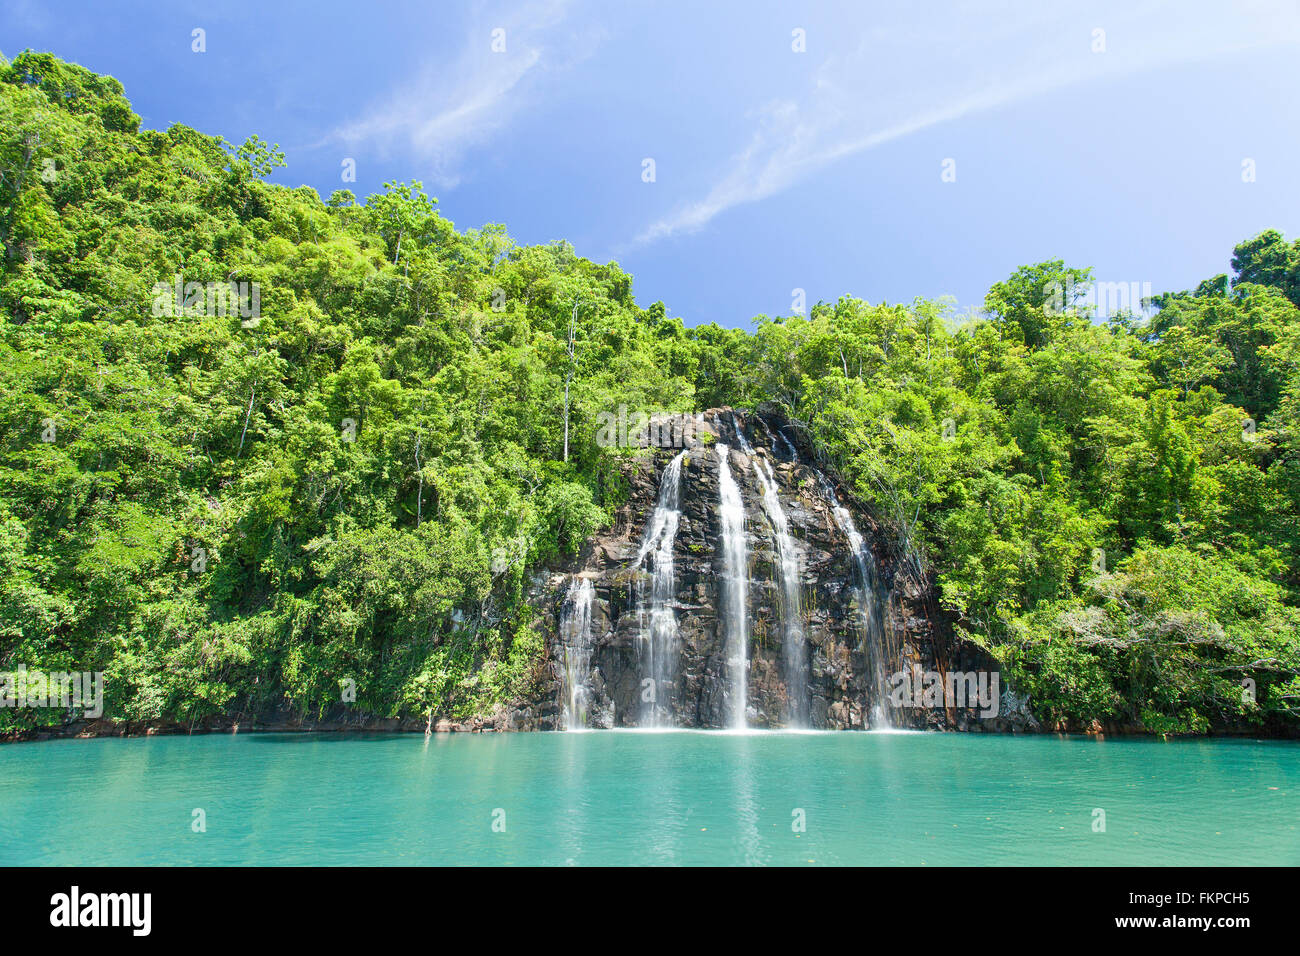 Breathaking Ansicht des Kahatola Wasserfall in Ternate. Es ist in den Molukken (Molukken) von Ost-Indonesien. Stockfoto